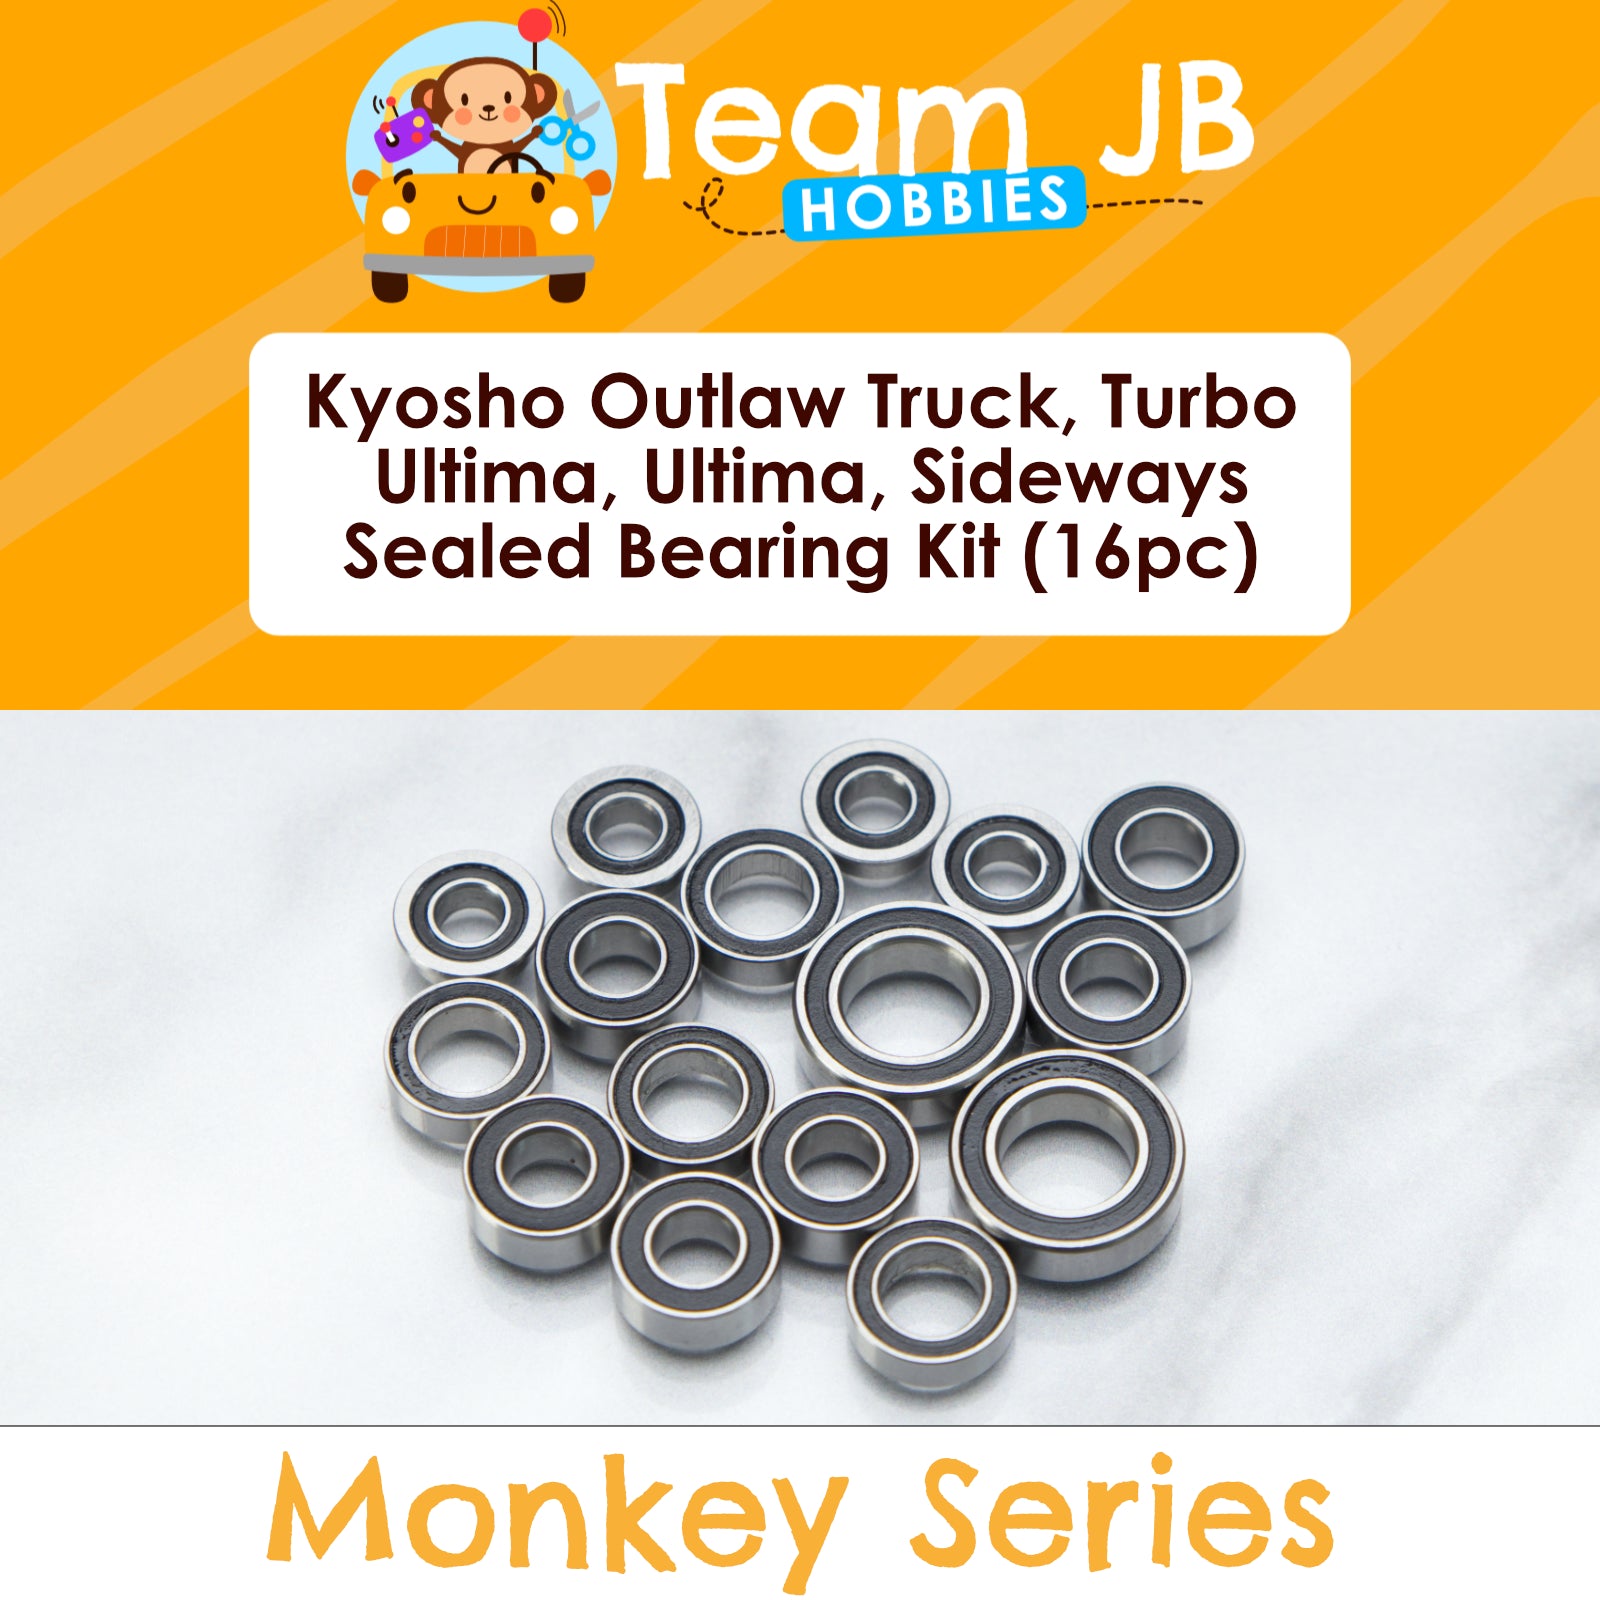 Kyosho Outlaw Truck, Turbo Ultima, Ultima, Sideways - Sealed Bearing Kit